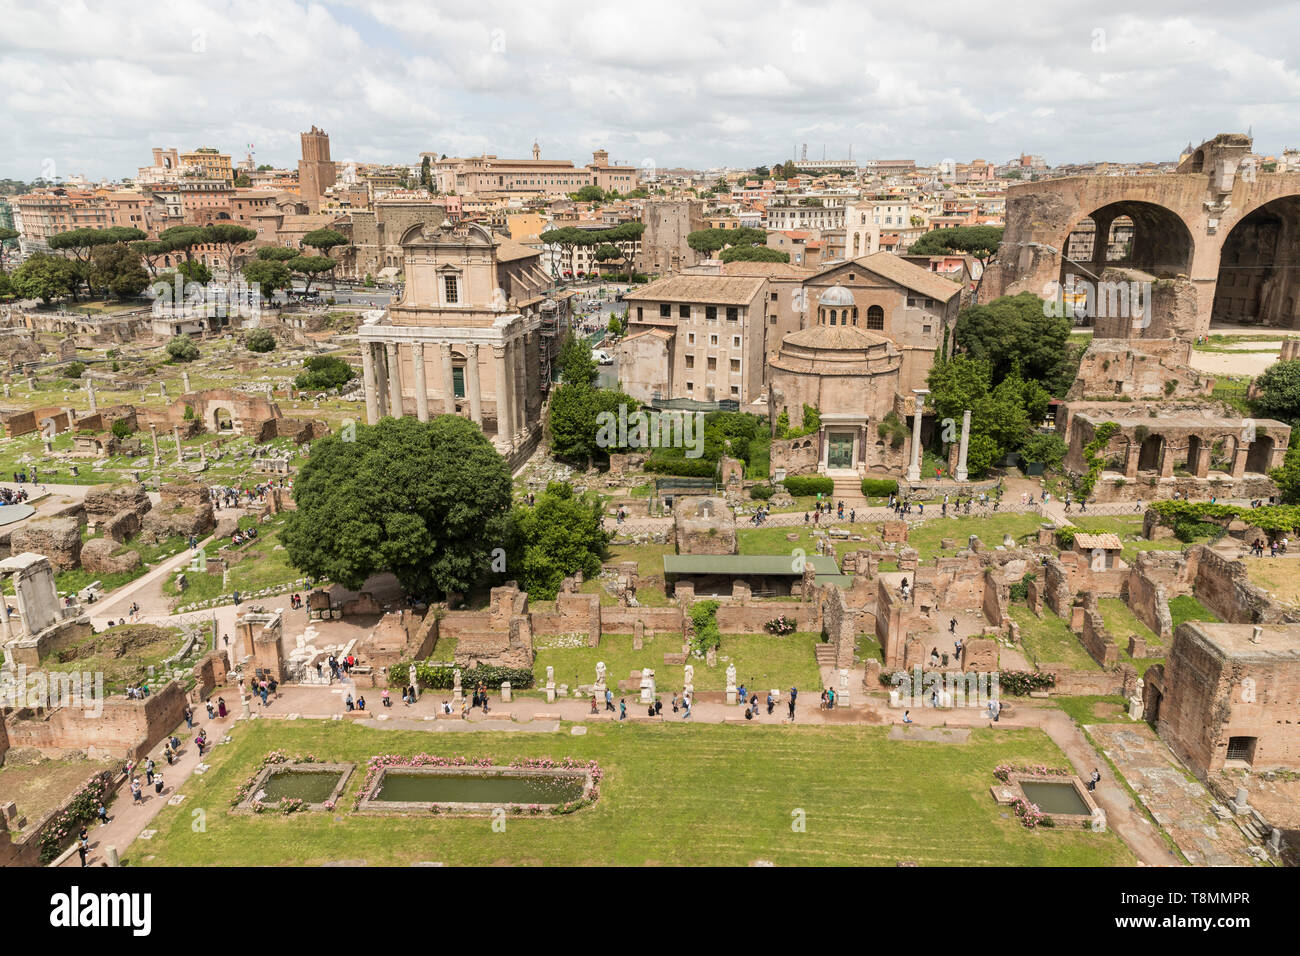 Italia, Roma: vestigios romanos que rodean el Foro Romano, el Foro Romano, sitio registrado como sitio del Patrimonio Mundial de la UNESCO Foto de stock